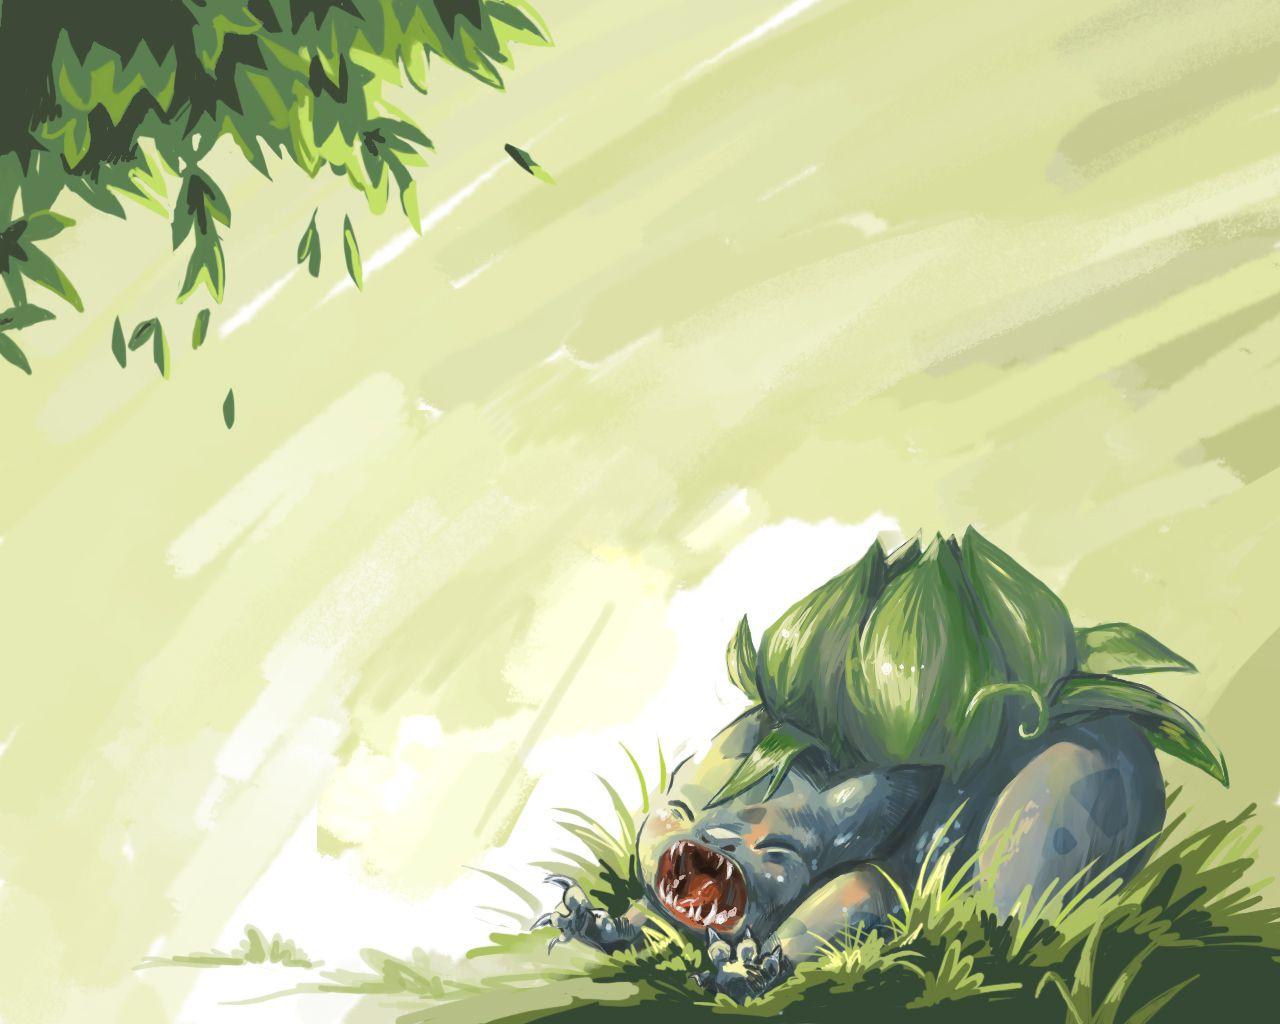 Bulbasaurémon Anime Image Board